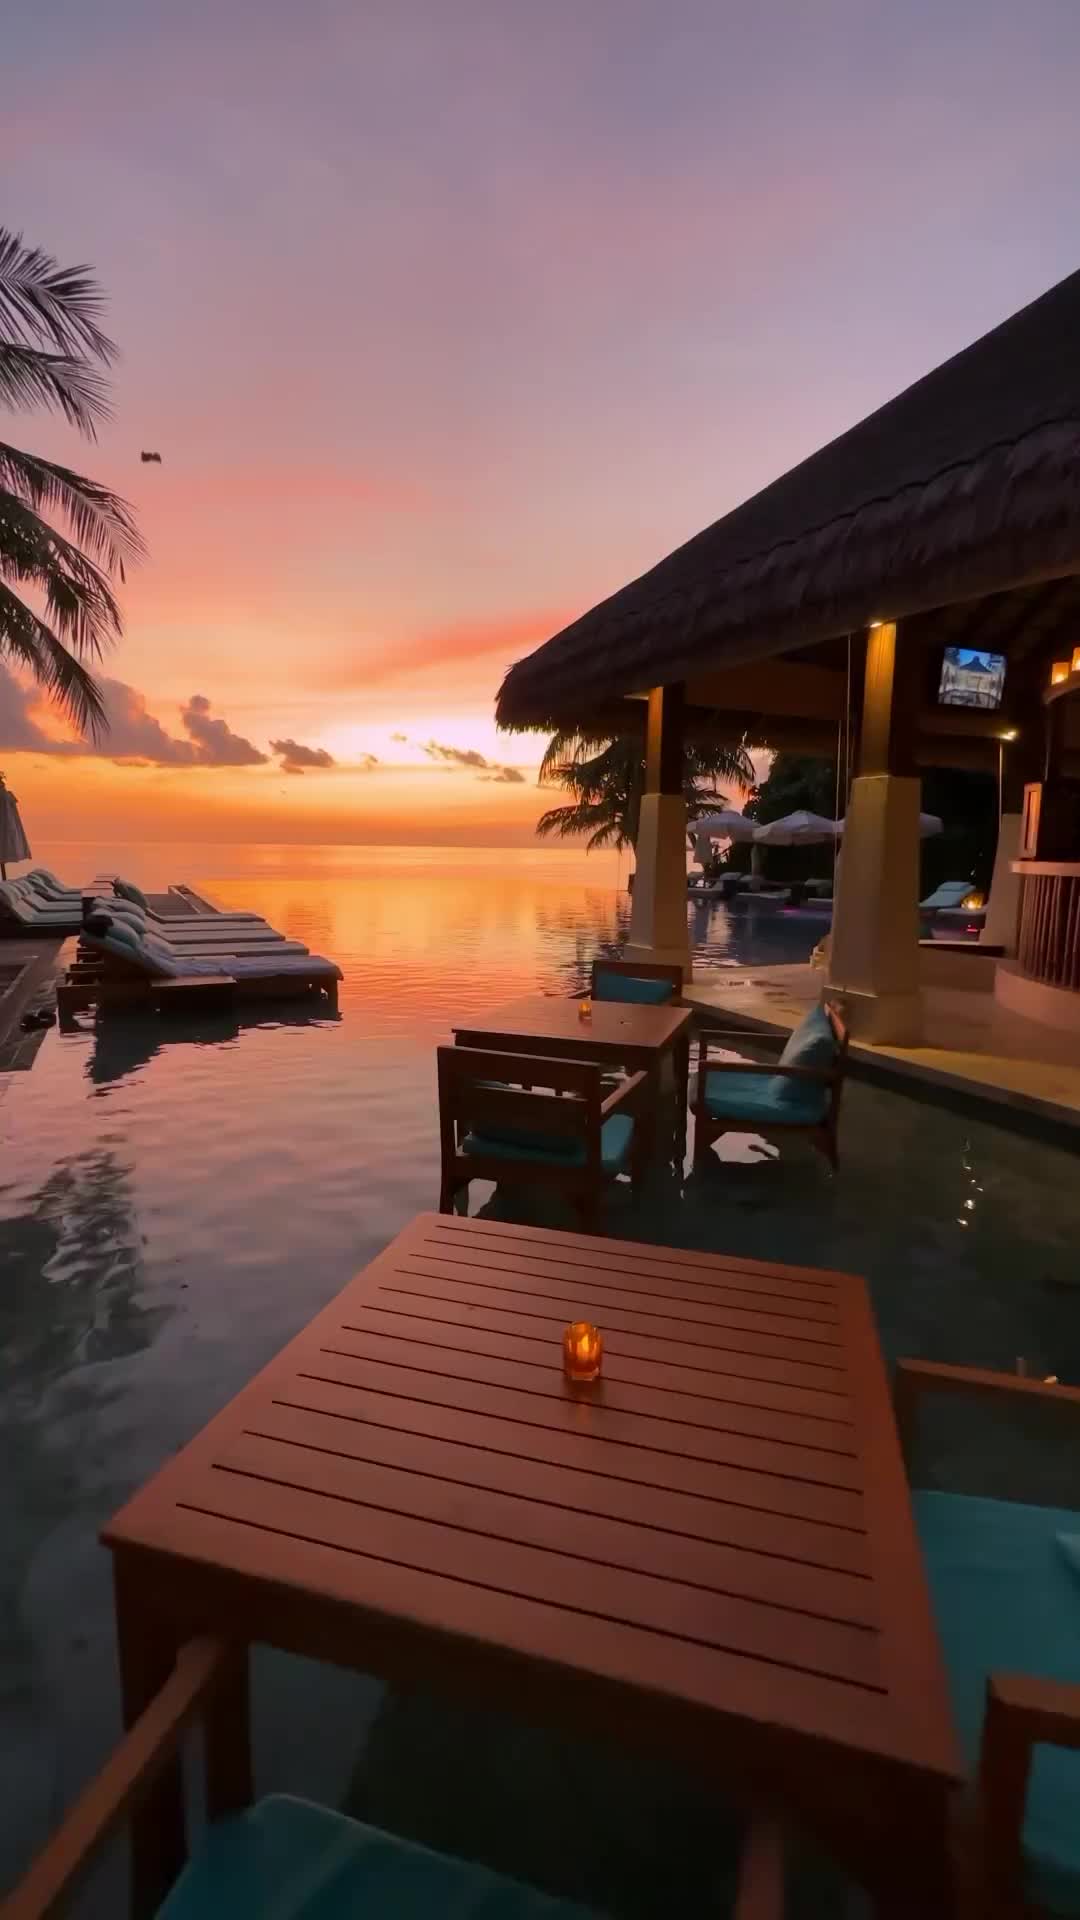 Unreal Sunset at Ayada Maldives Resort